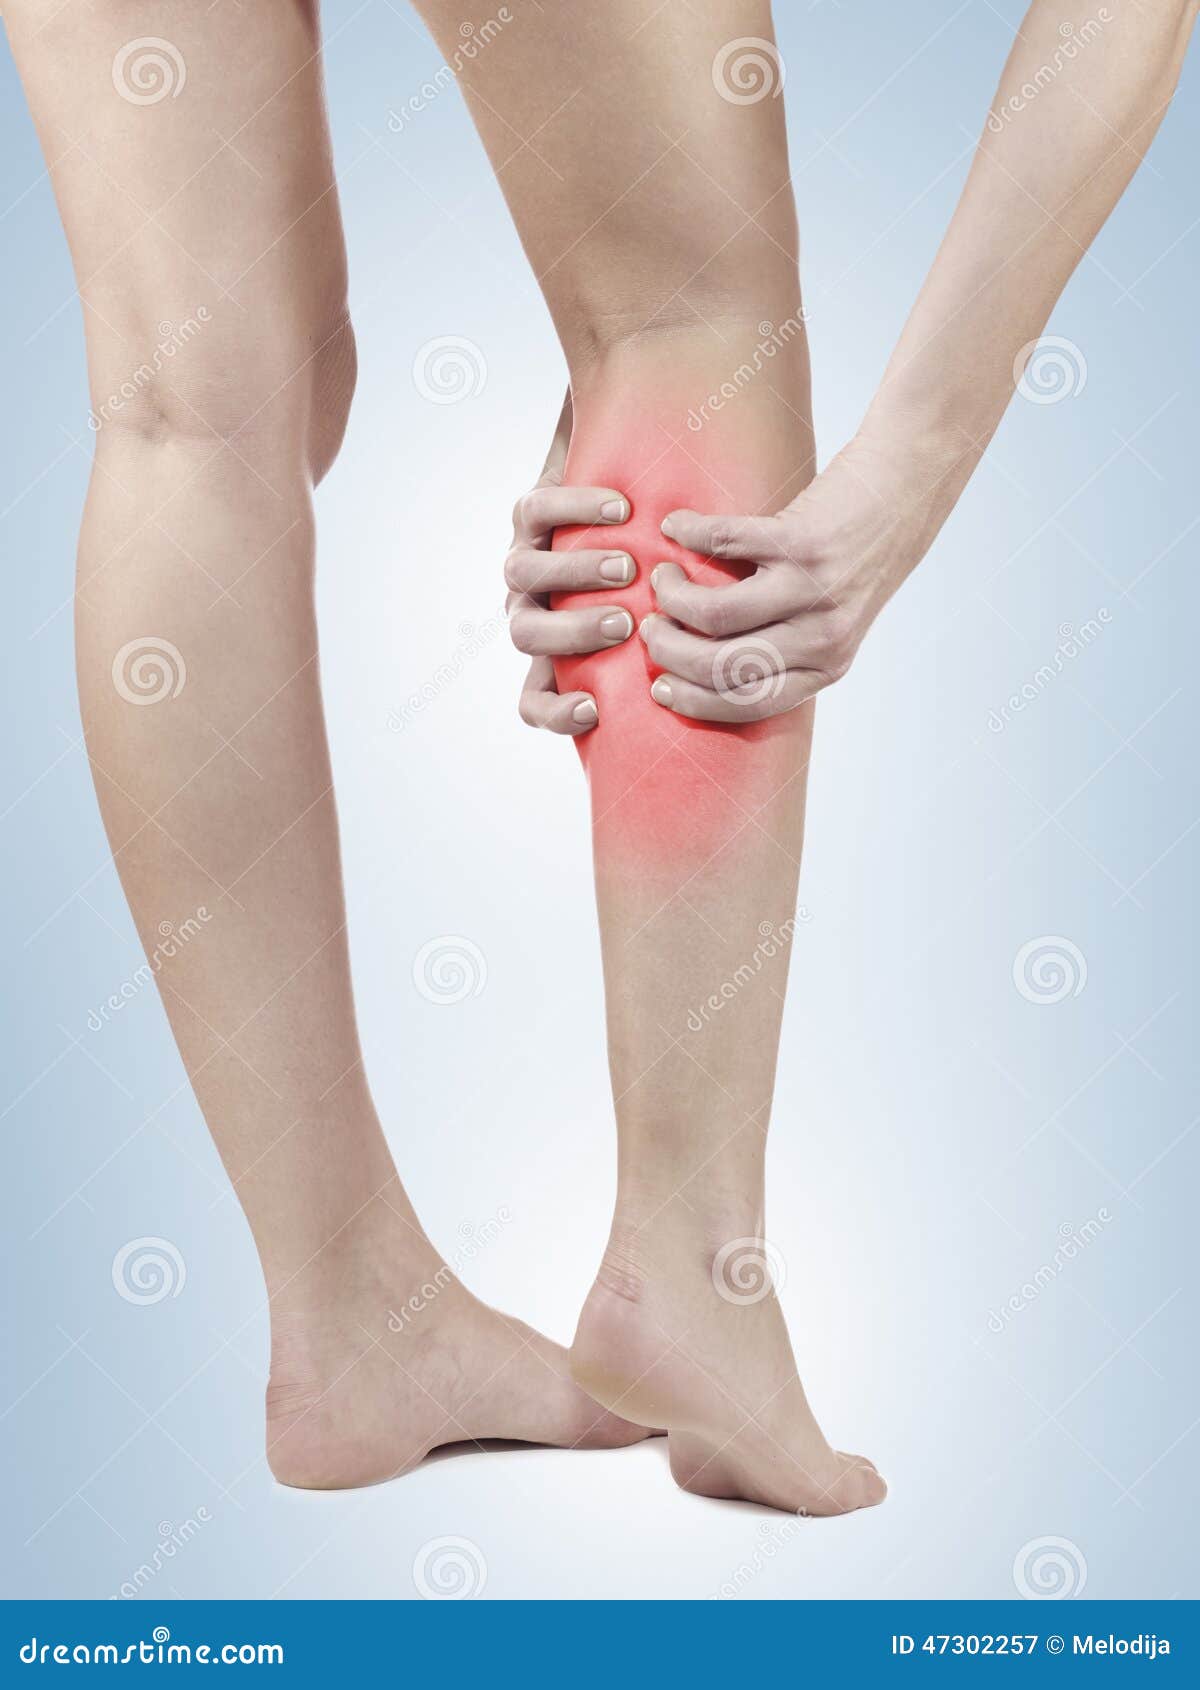 Сильная боль в икрах ног. Боль в подколенном сухожилии. Боль сухожилия в икре.